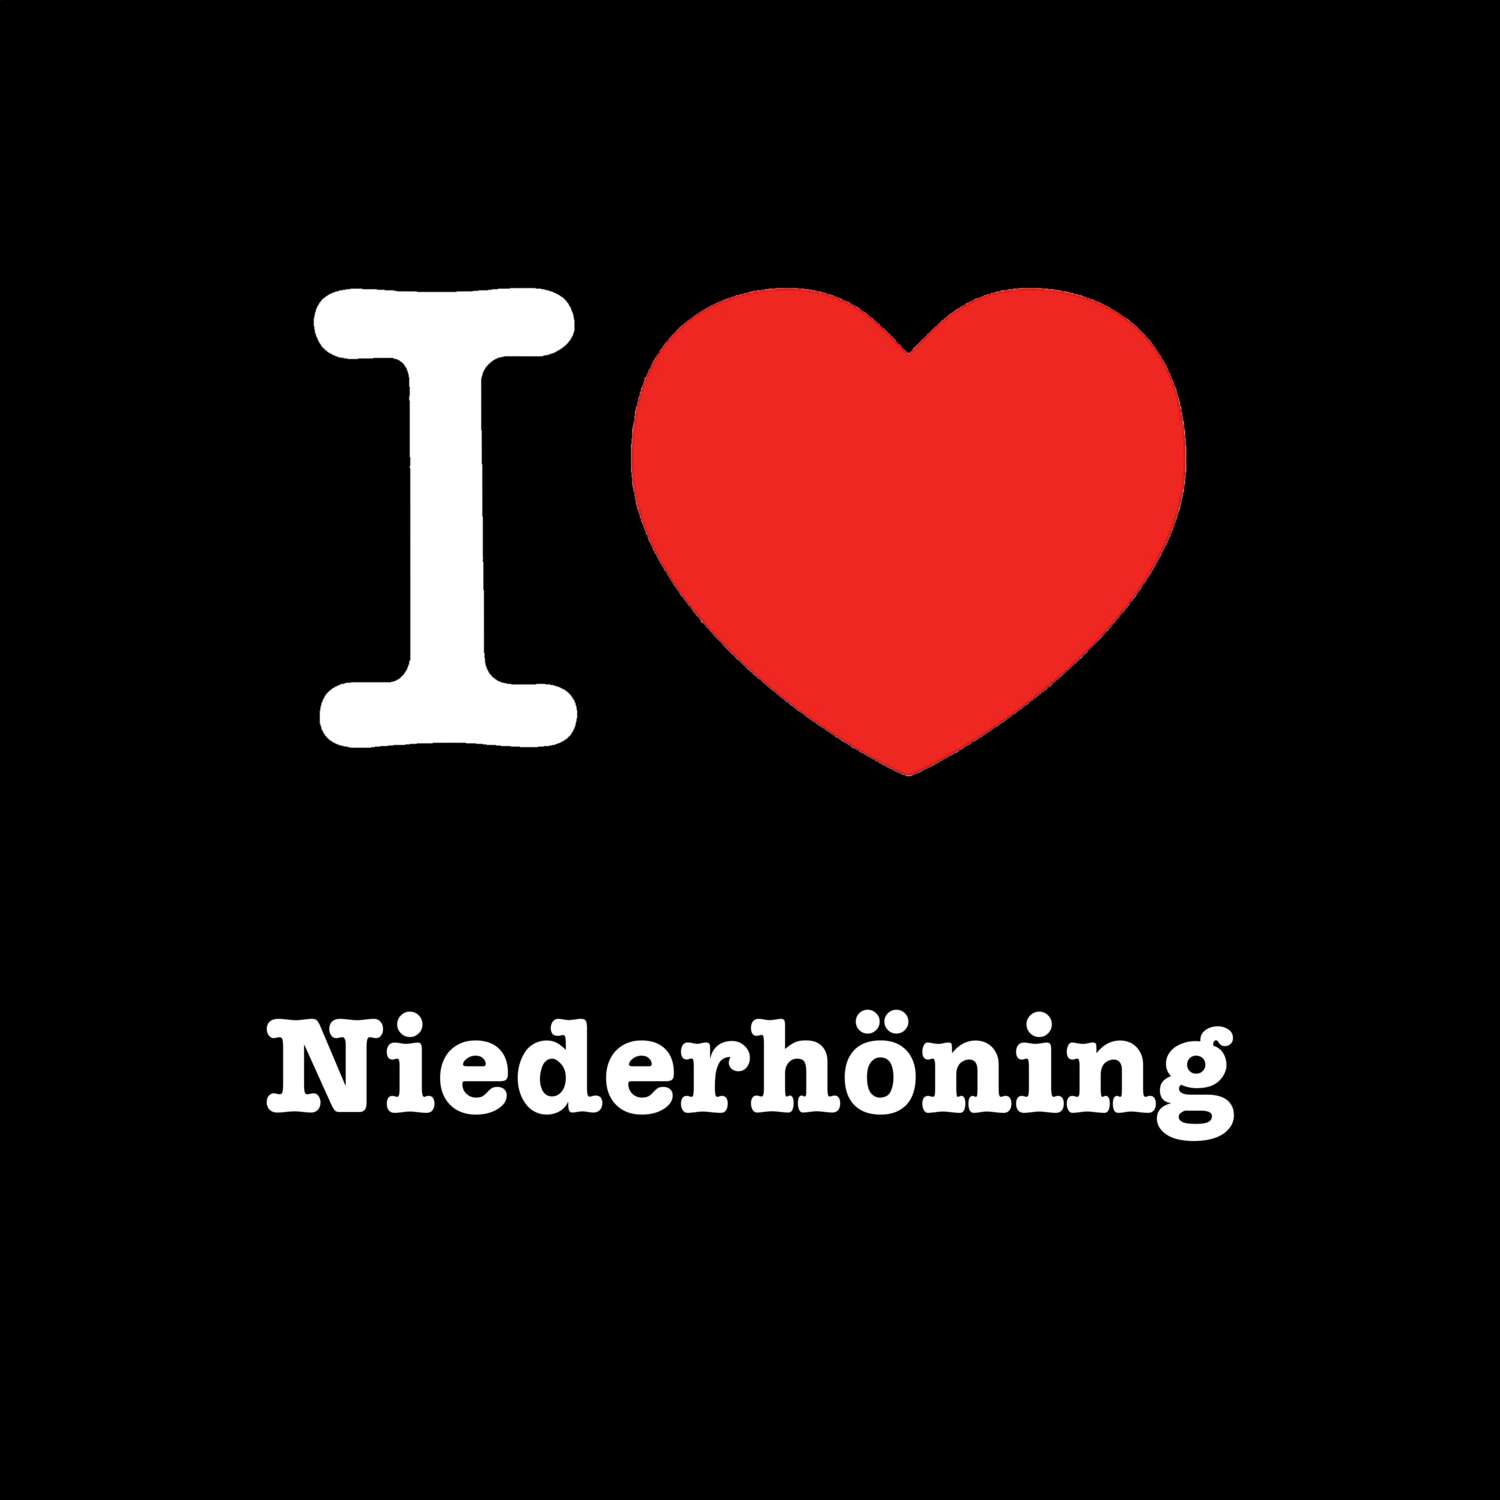 Niederhöning T-Shirt »I love«